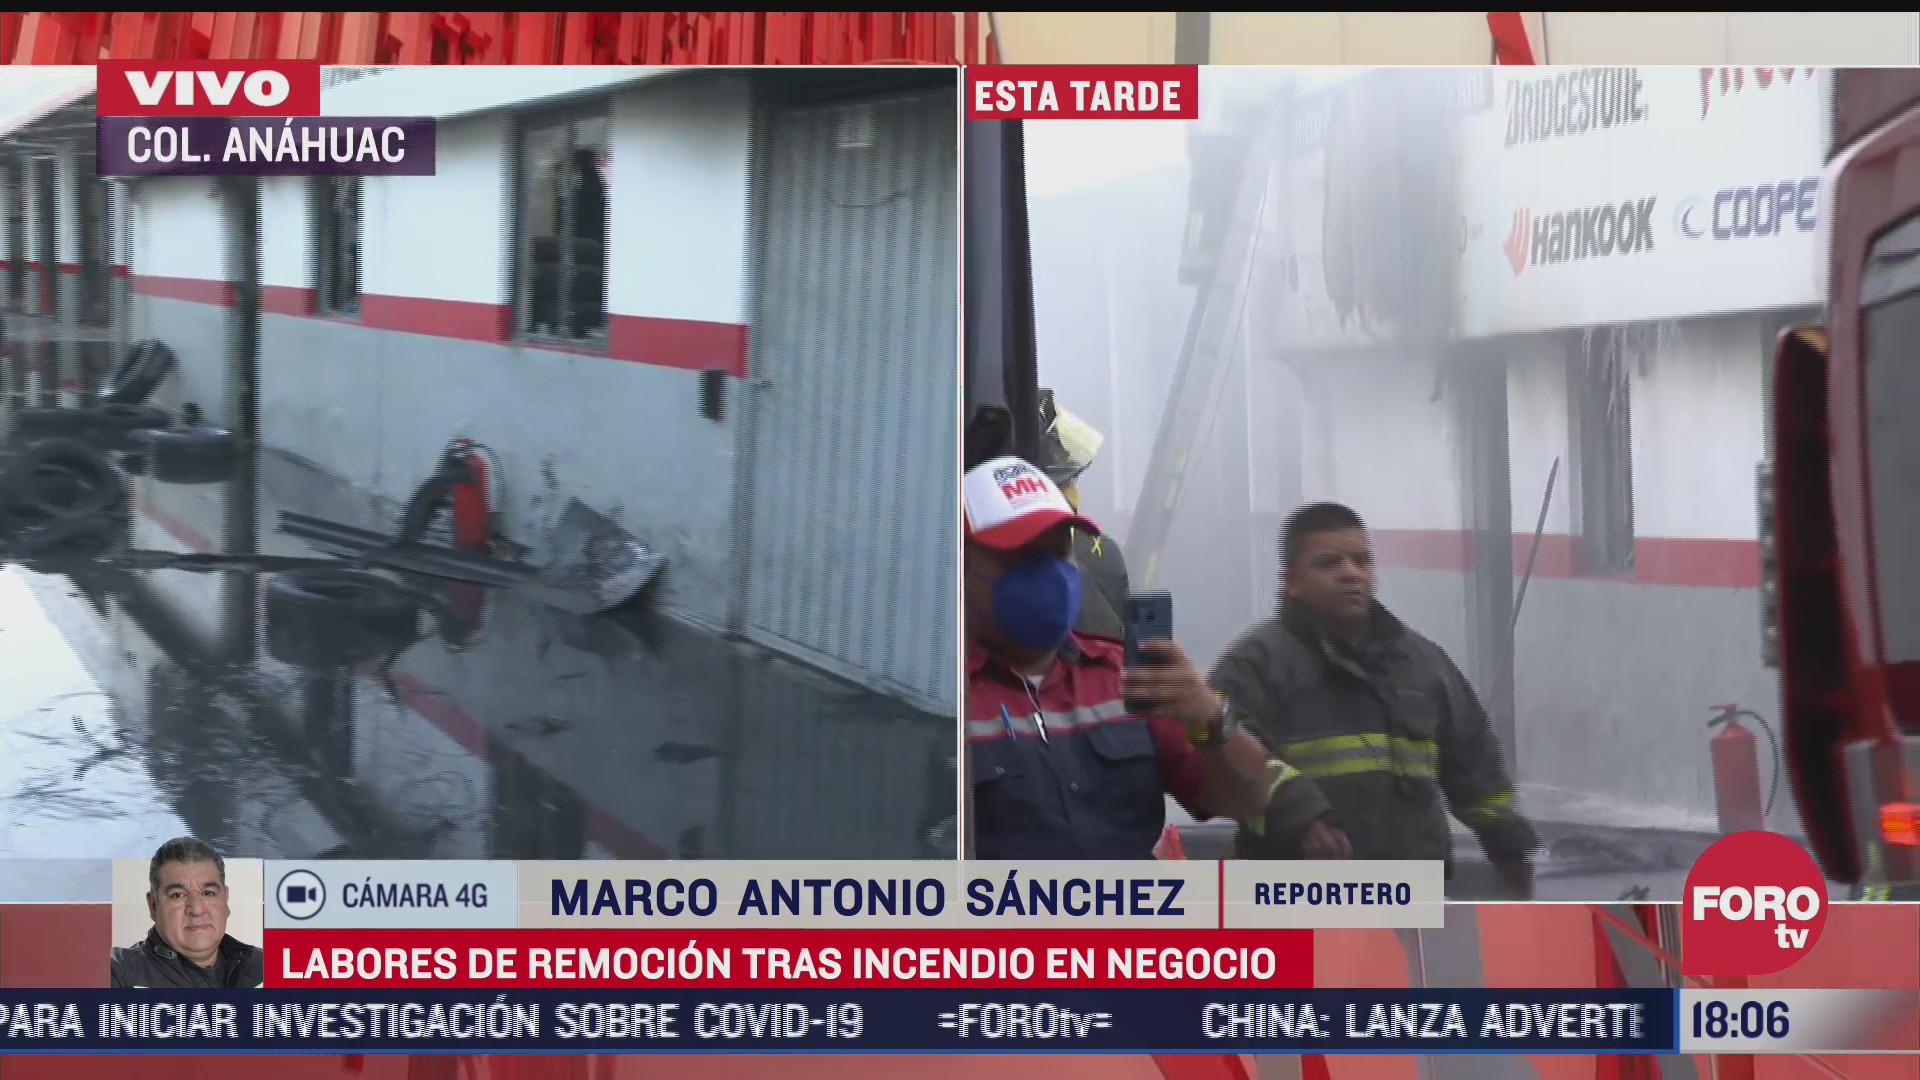 continua movilizacion de personal de emergencia tras un incendio en llantera de la colonia anahuac